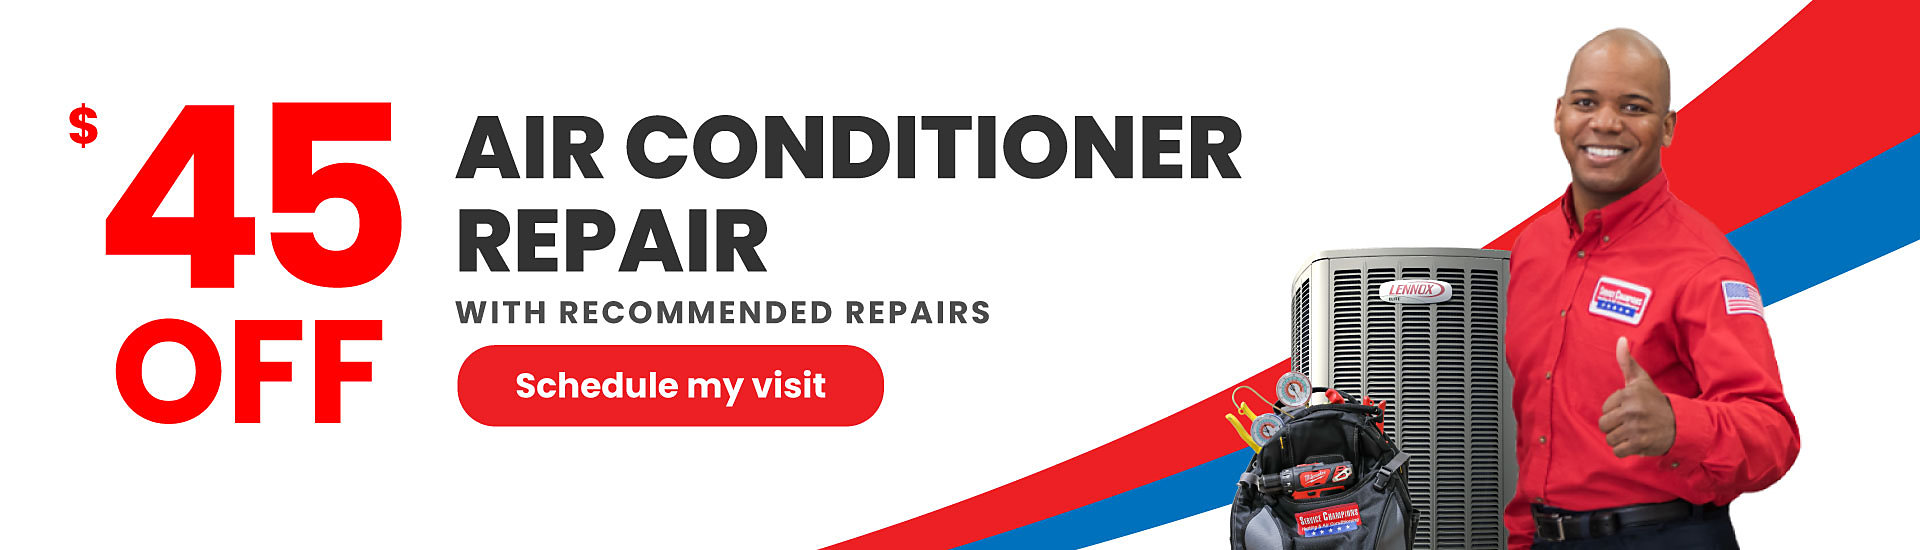 45 off Air Conditioner Repairs